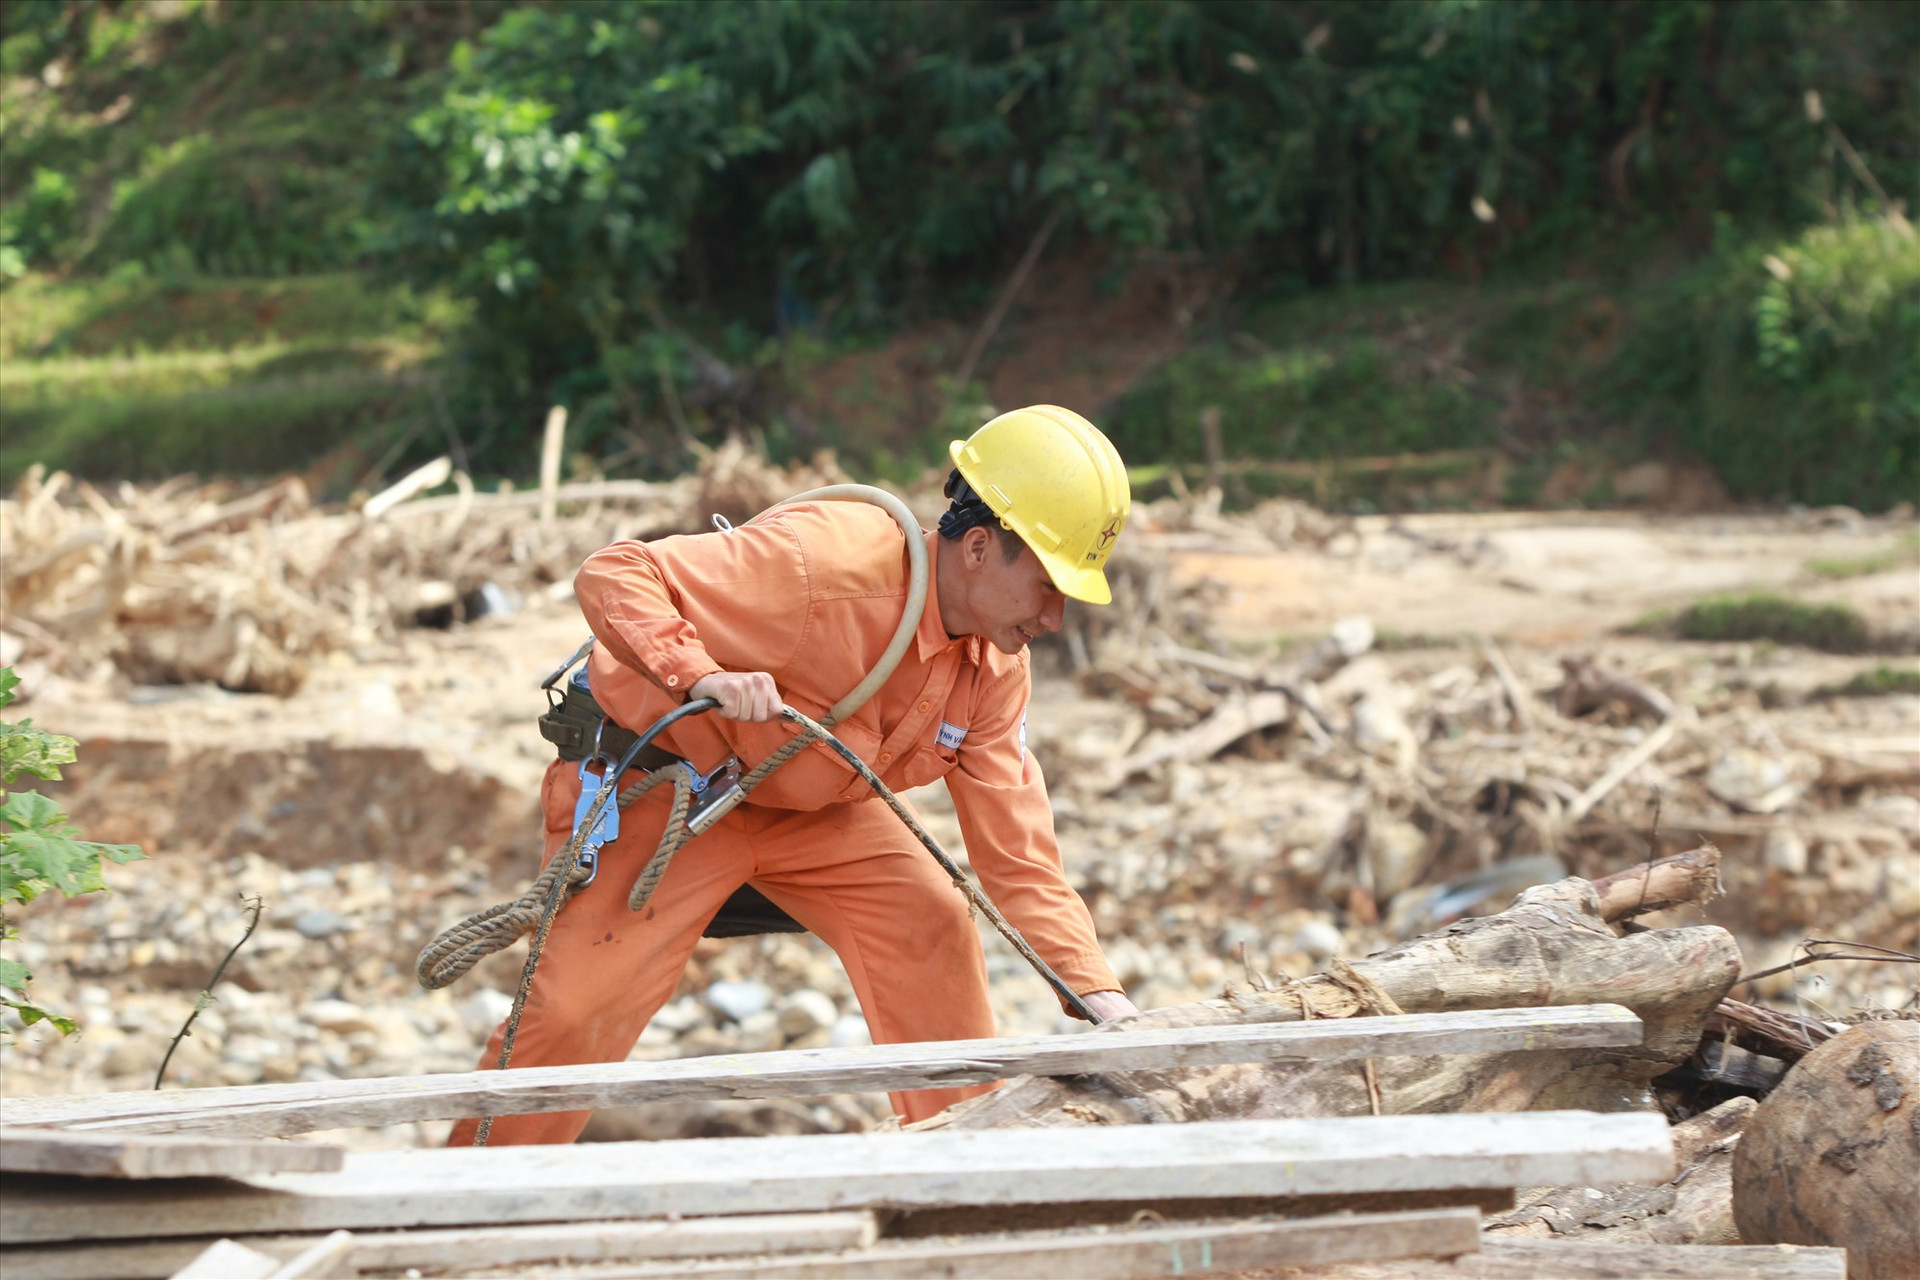 Công ty Điện lực Quảng Nam đã rất nỗ lực trong việc khôi phục hệ thống điện sau thiên tai, hỗ trợ tìm kiếm cứu nạn và khắc phục hậu quả đợt mưa lũ năm 2020. Ảnh: THÀNH CÔNG